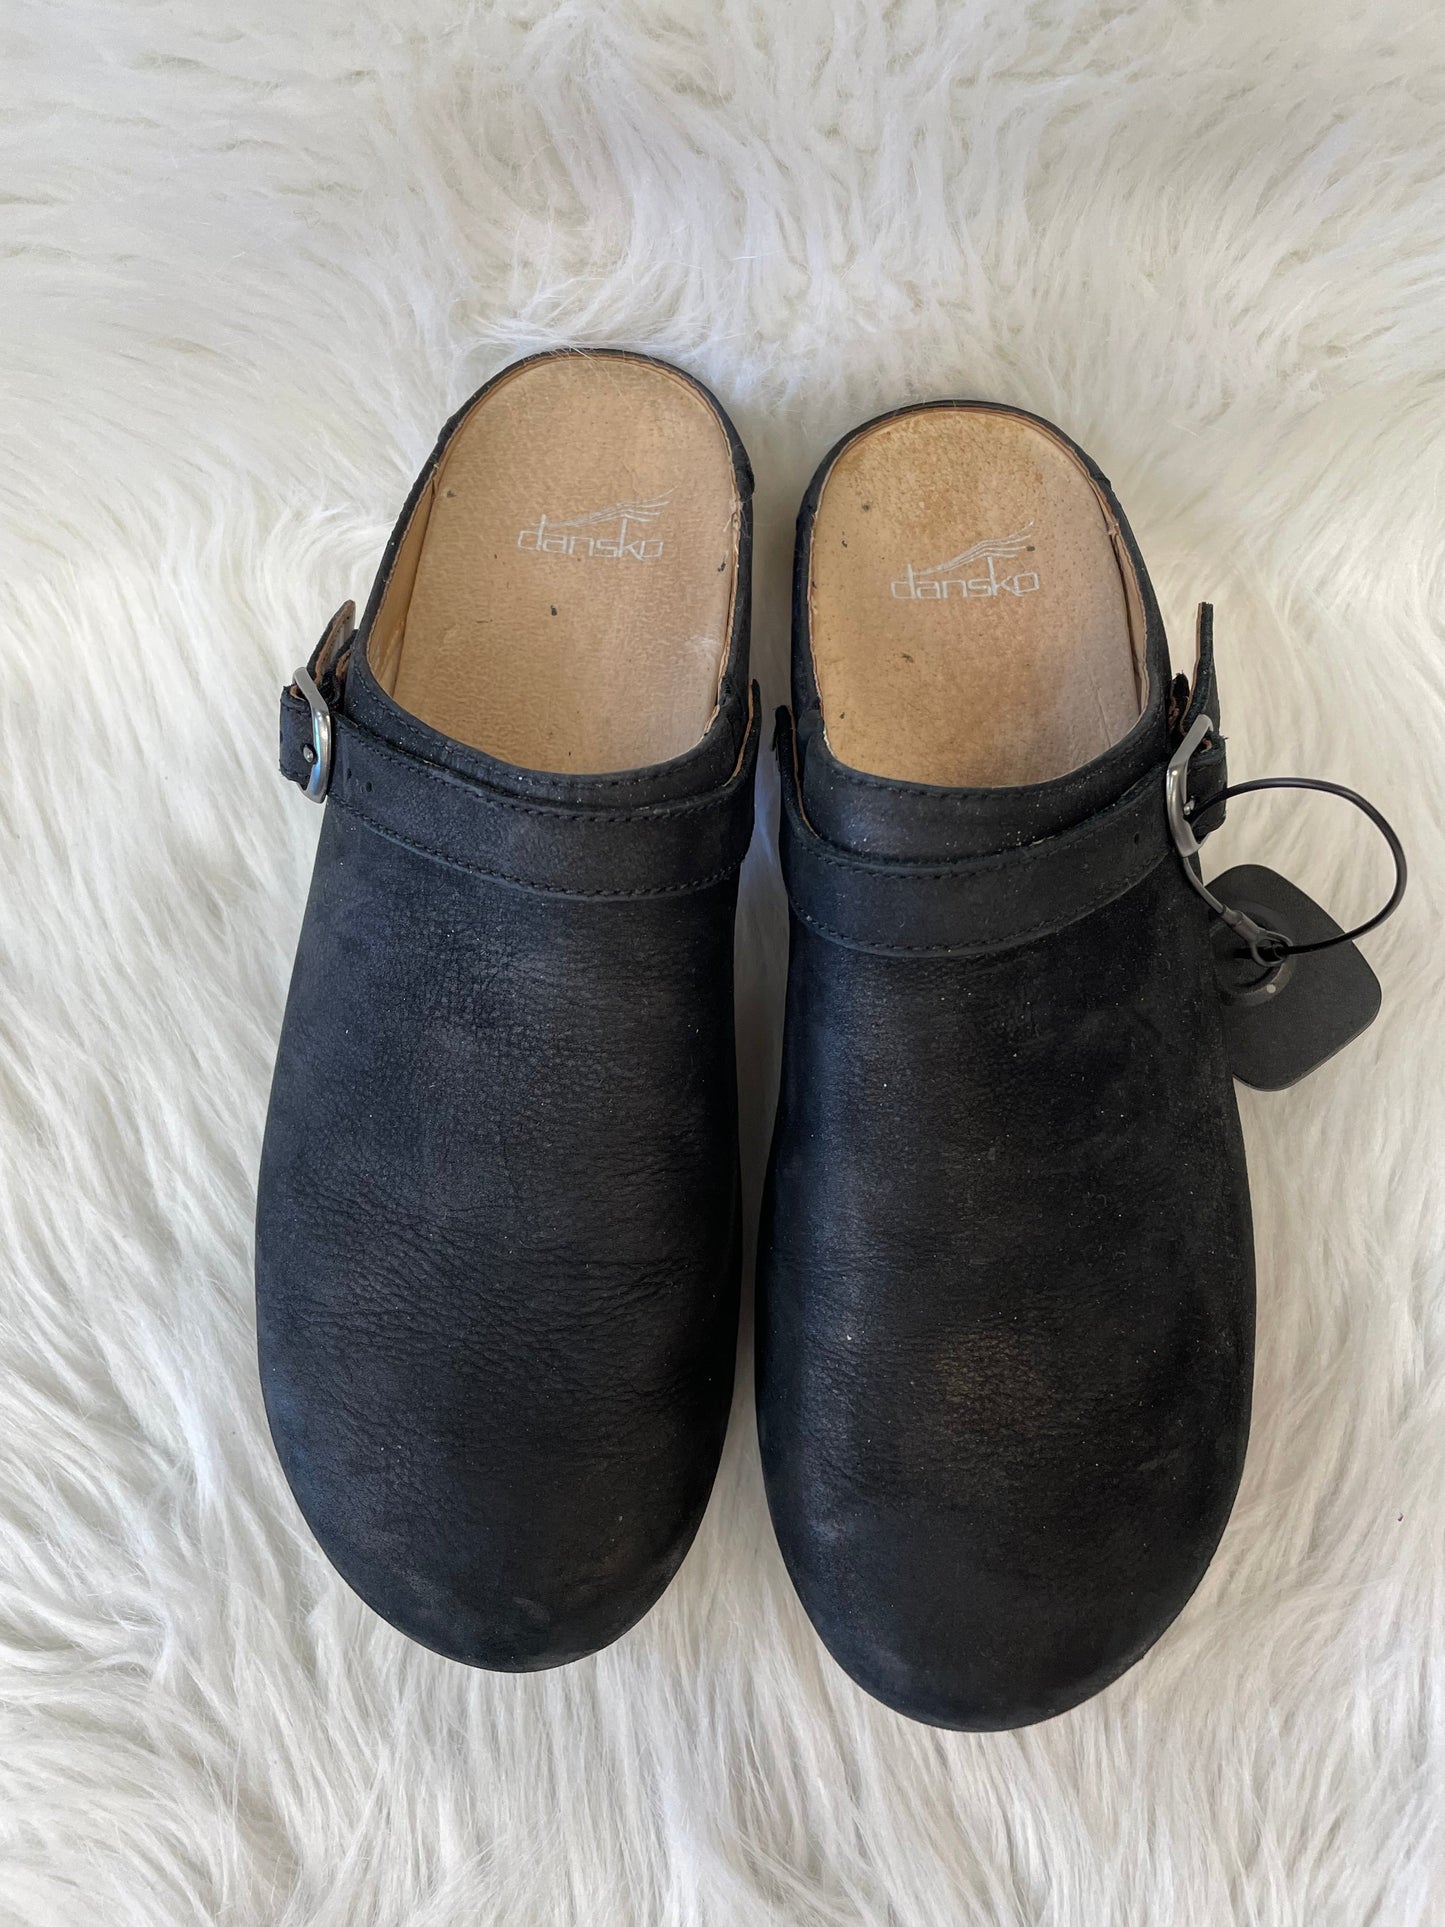 Shoes Heels Block By Dansko  Size: 9.5